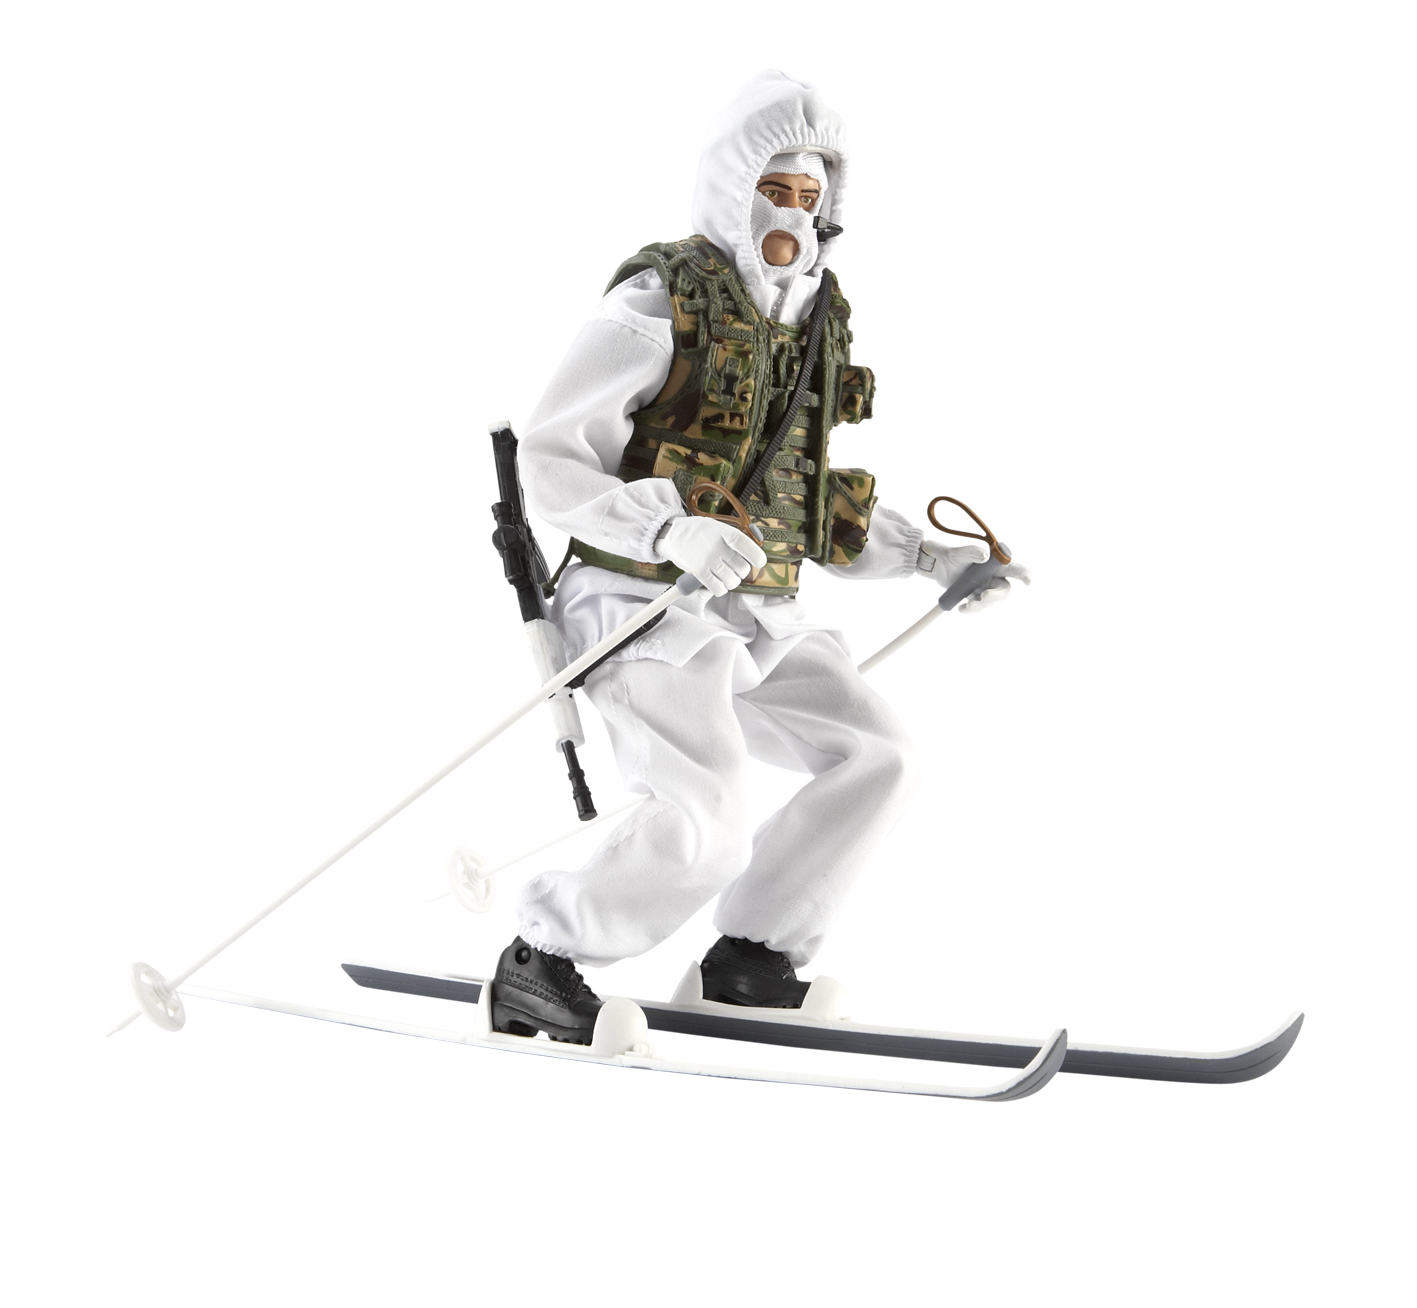 Unbranded Hmaf Army Ski Patrol Infantryman